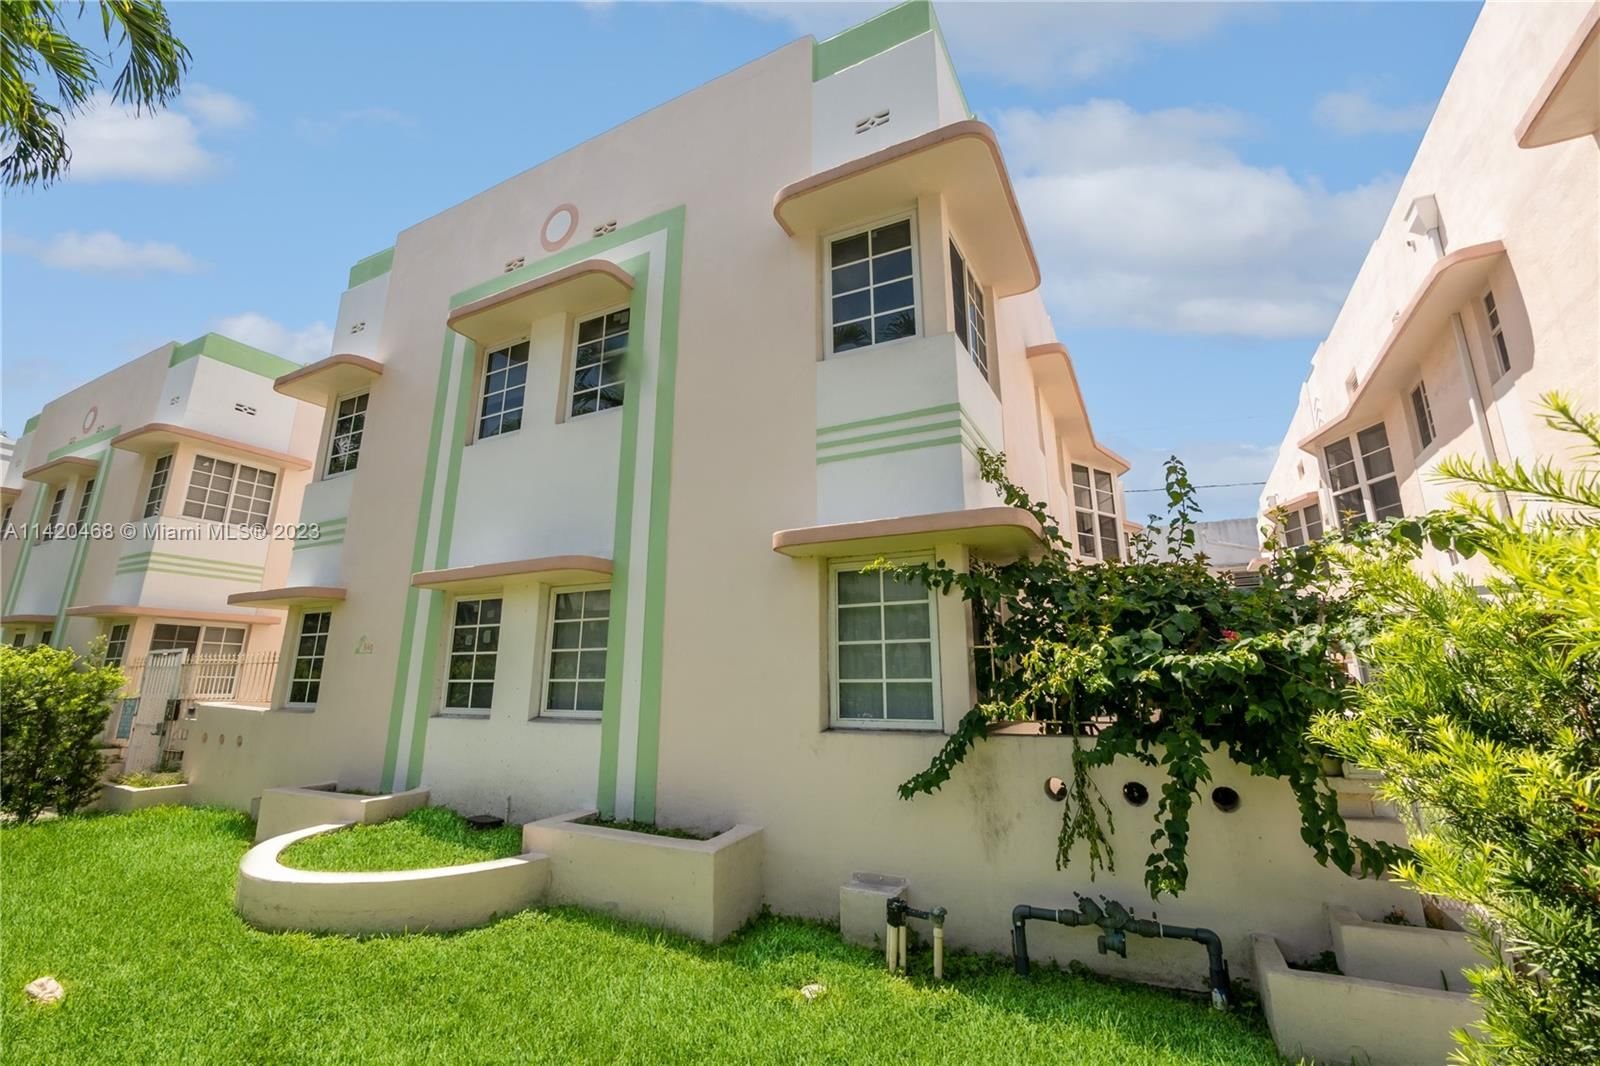 Real estate property located at 540 15th St #201, Miami-Dade County, THE CHELSEA CONDO, Miami Beach, FL